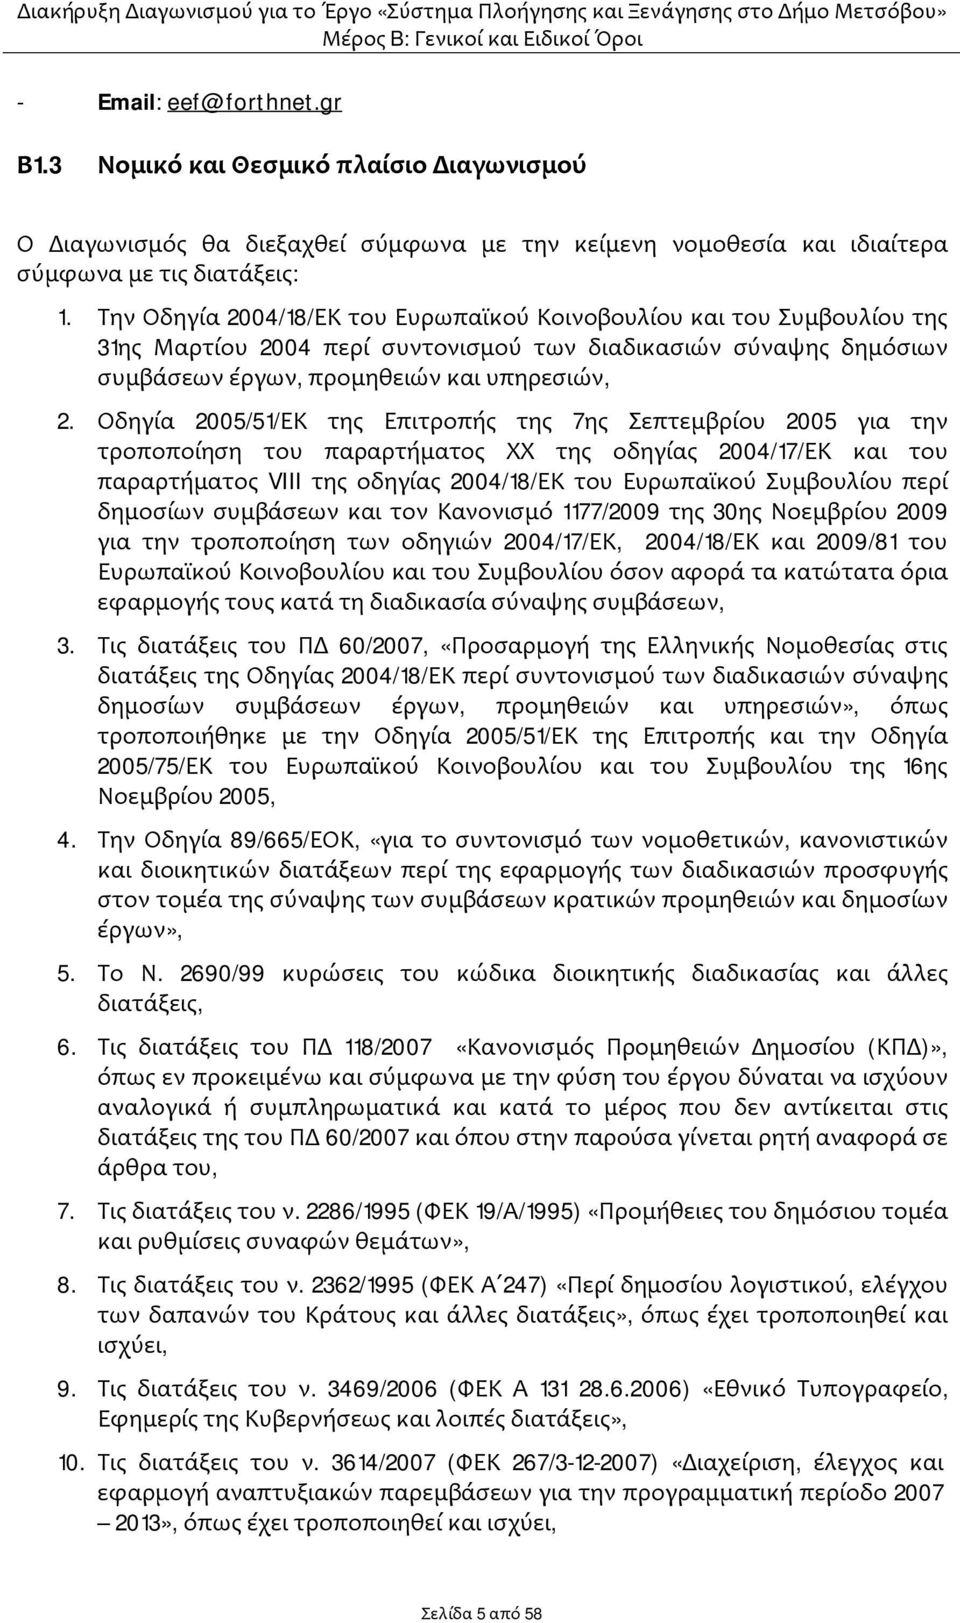 Οδηγία 2005/51/ΕΚ της Επιτροπής της 7ης Σεπτεμβρίου 2005 για την τροποποίηση του παραρτήματος ΧΧ της οδηγίας 2004/17/ΕΚ και του παραρτήματος VIII της οδηγίας 2004/18/ΕΚ του Ευρωπαϊκού Συμβουλίου περί